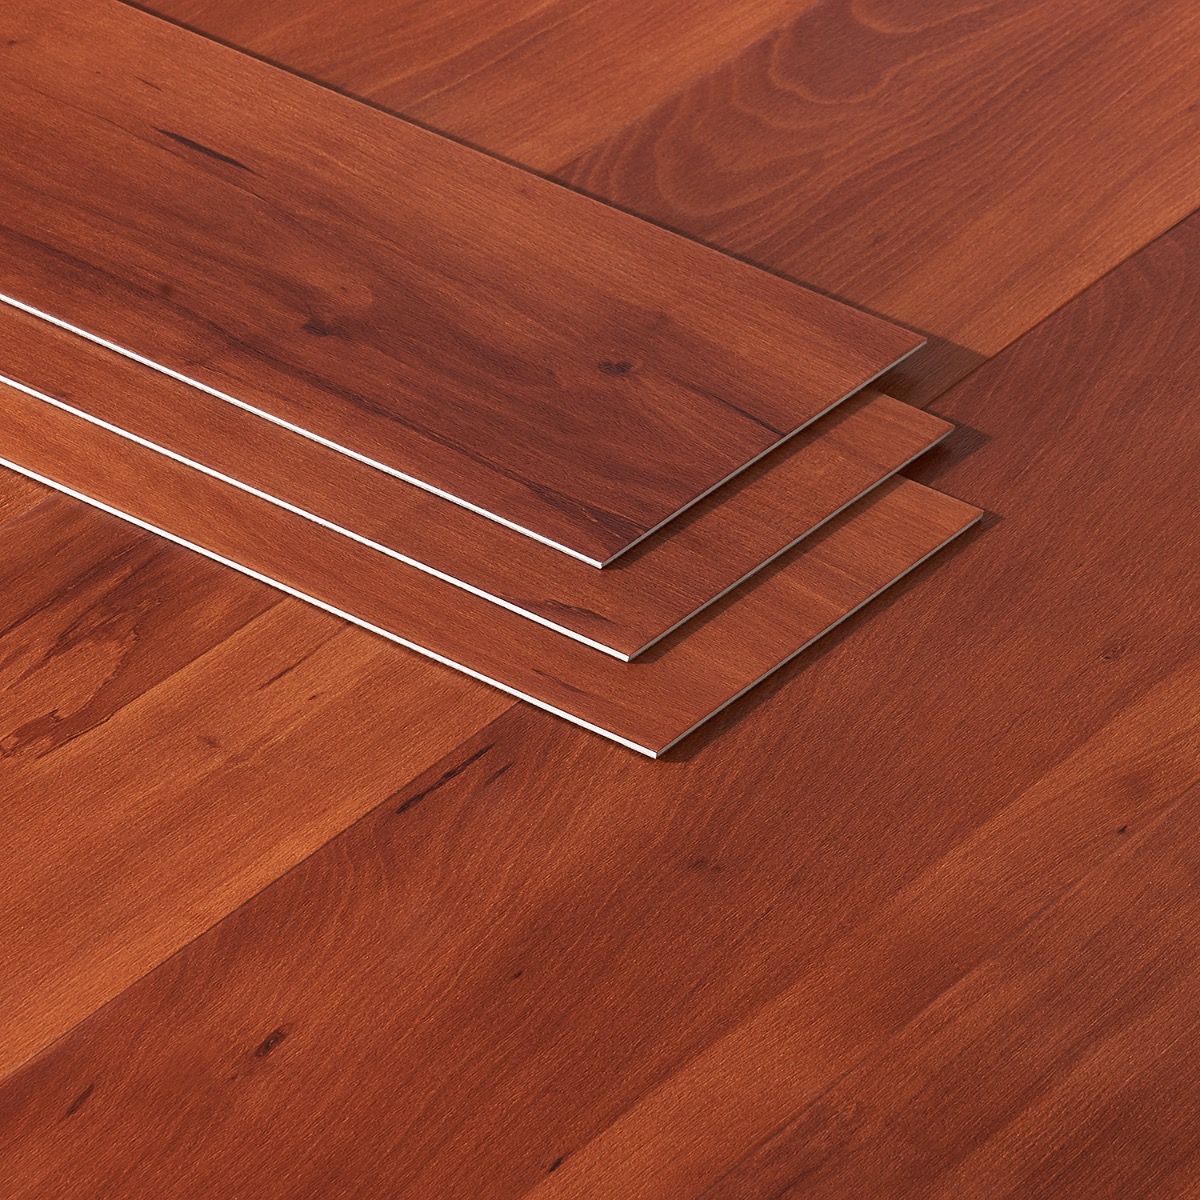 Artmore Tile Loseta Wood Look American, Luxury Vinyl Tile Flooring Wood Look